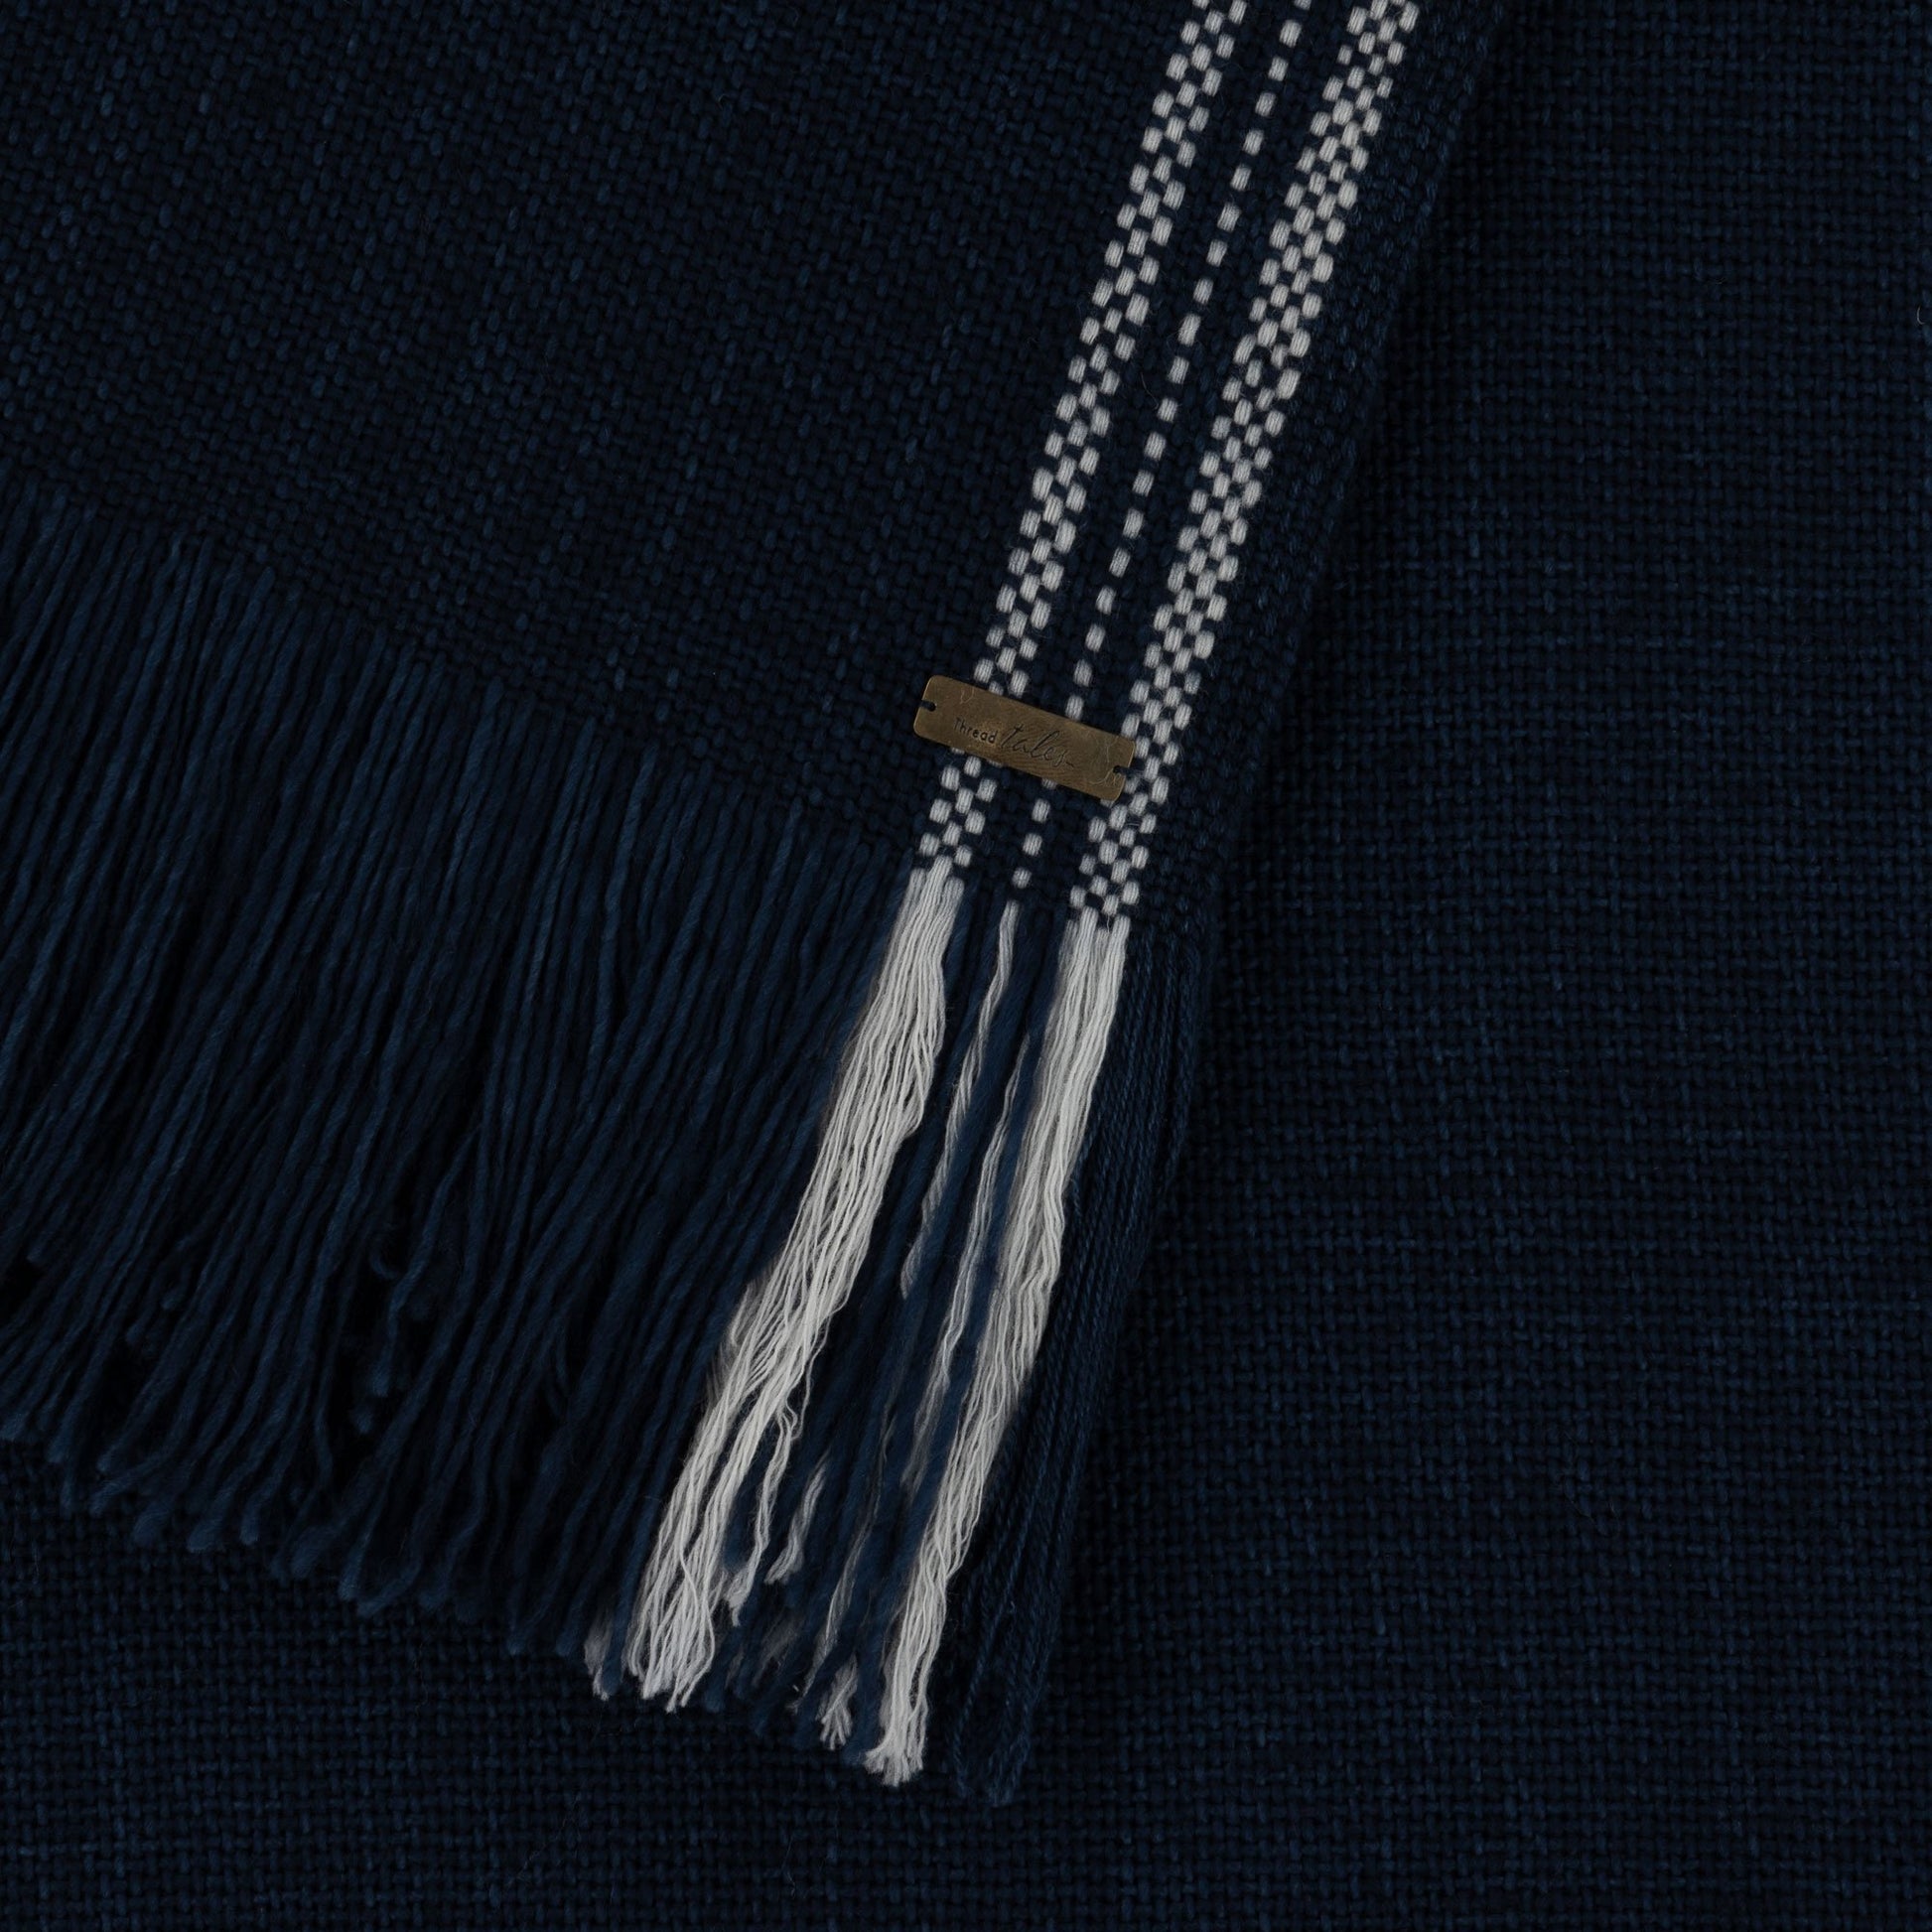 Pocket merino wool shawl in inky blue Thread Tales - Plum & Belle